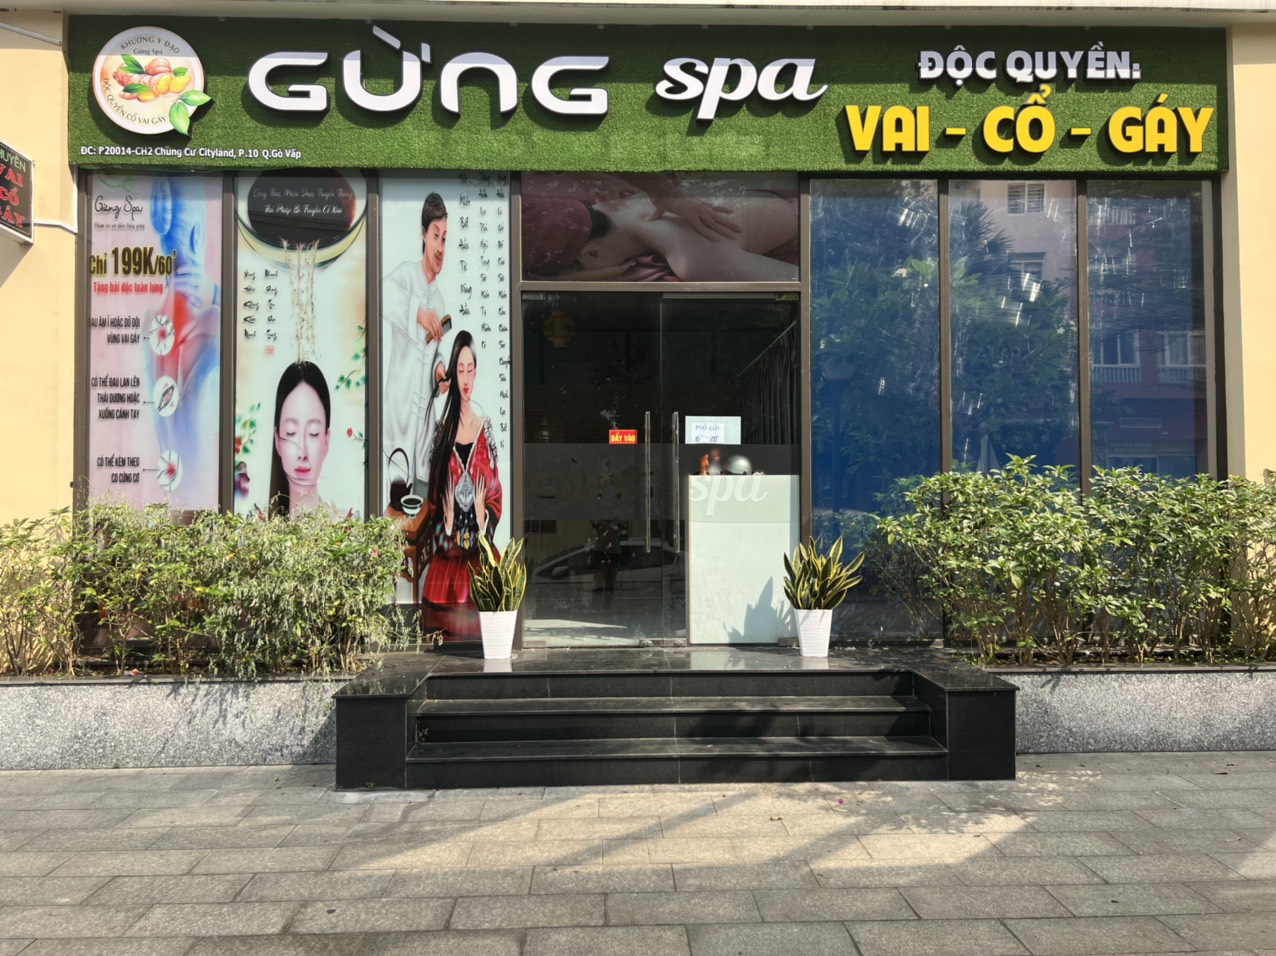 Top 3 Tiệm Spa Chuyên Trị Cổ Vai Gáy Uy Tín Tại Quận Gò Vấp TPHCM